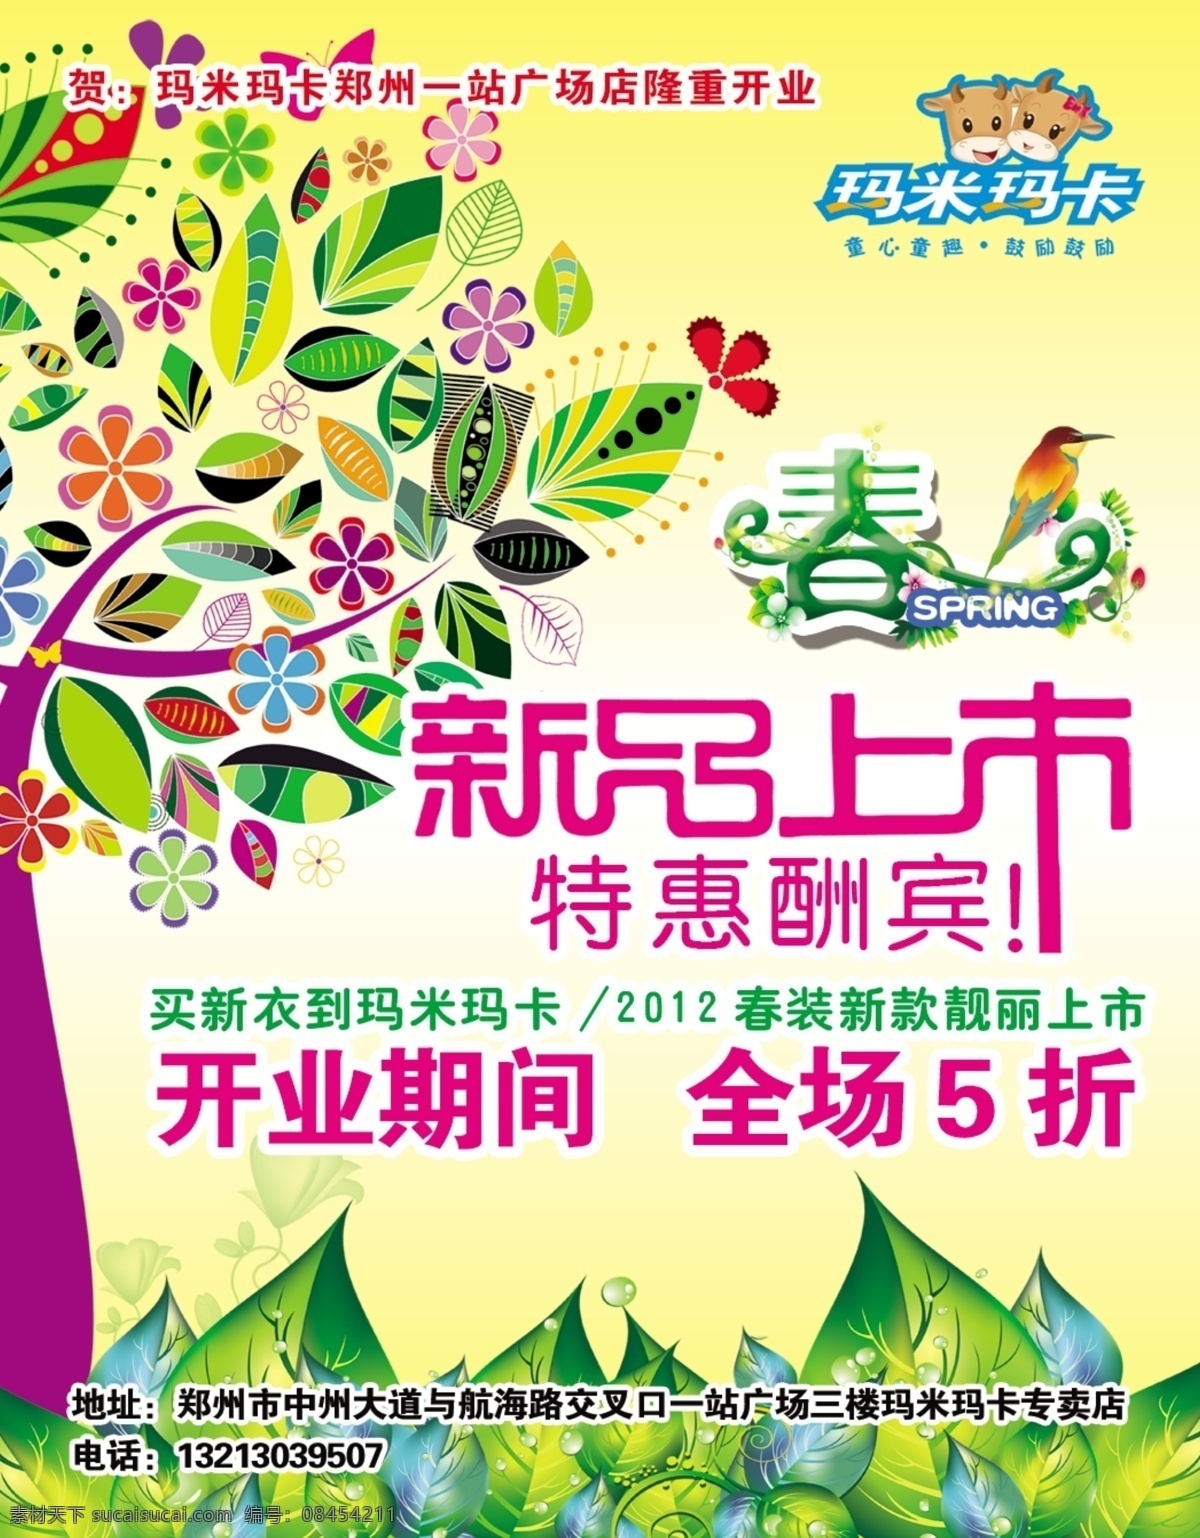 玛米 玛卡 春 广告设计模板 花 鸟 树 树木剪影 树叶 树枝 玛米玛卡 新品上市 源文件 其他海报设计